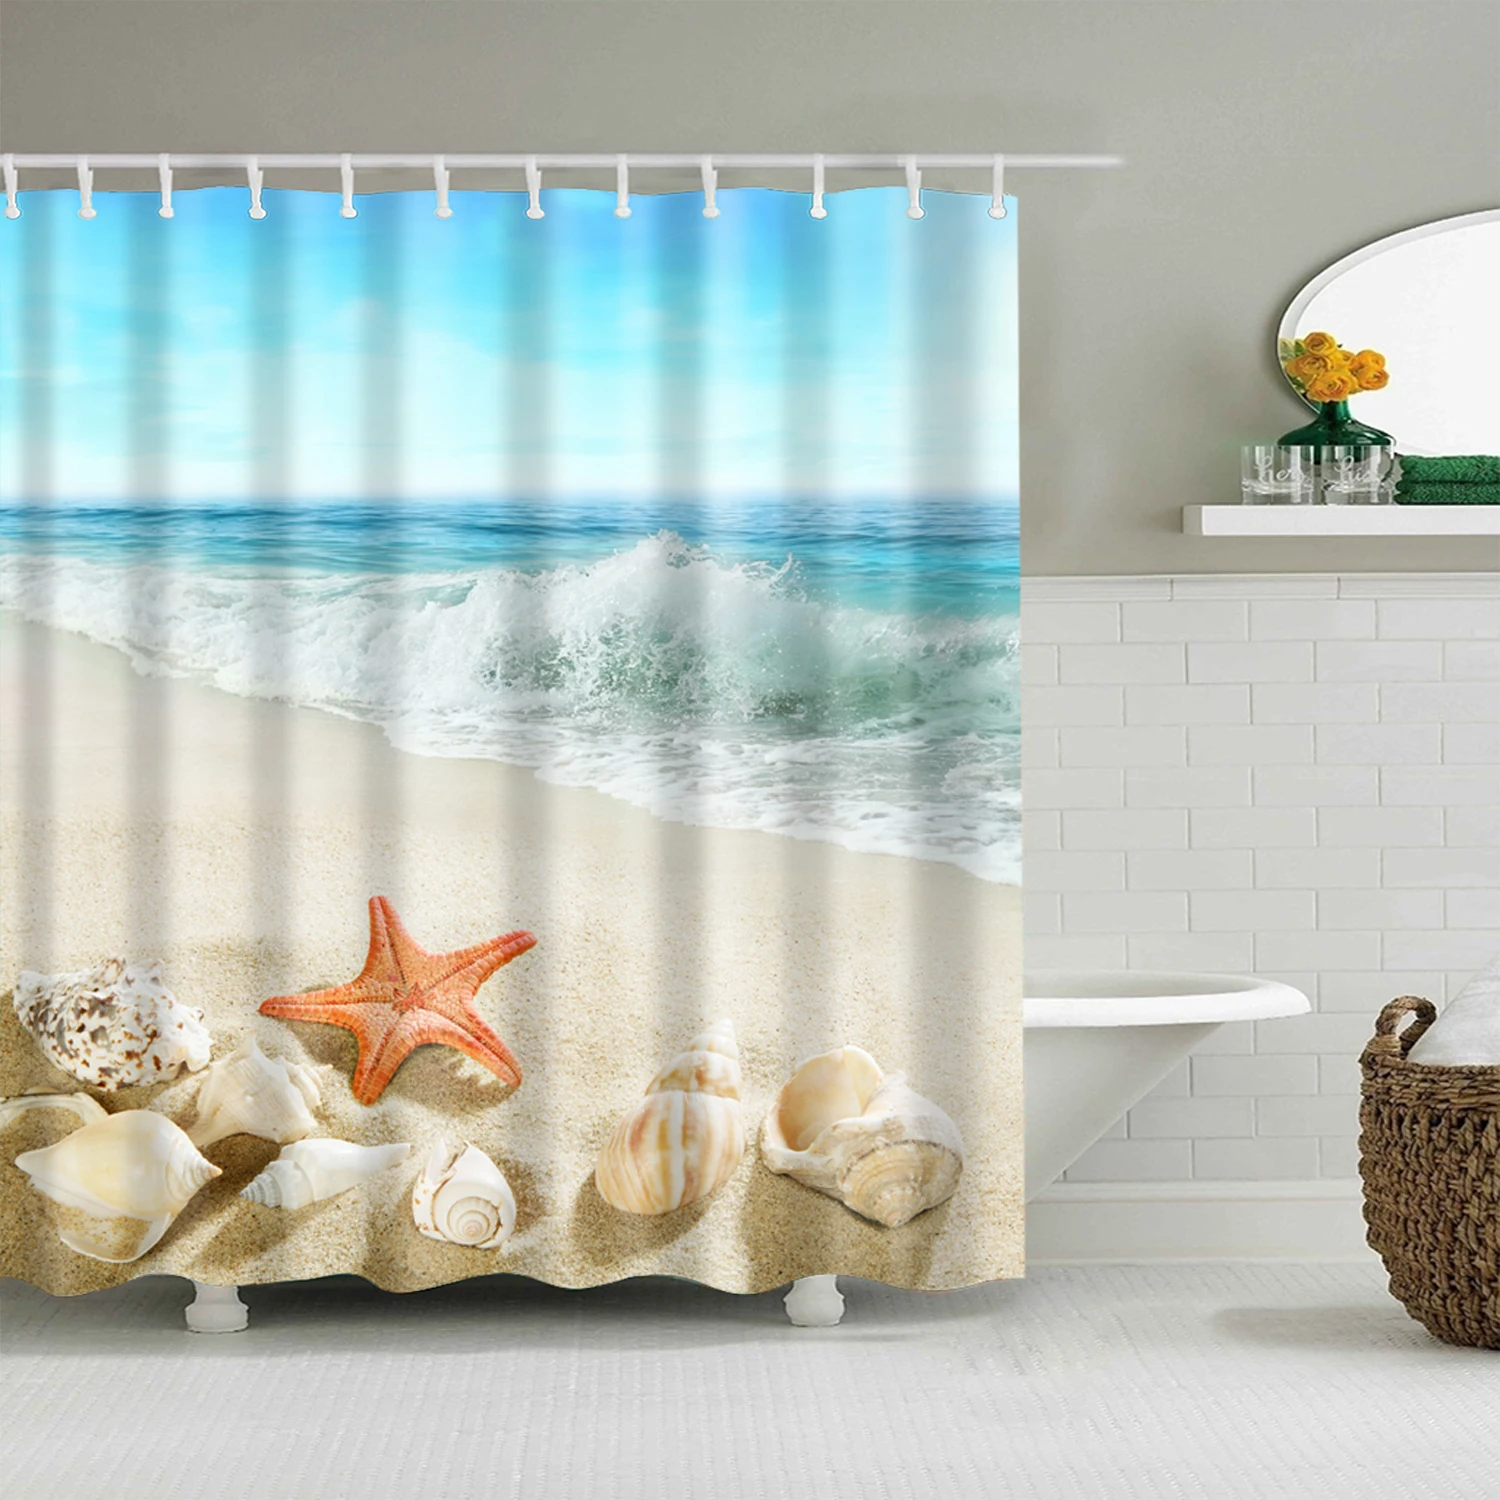 Океанский пляжный Корпус 3d занавеска для Ванной Душа s Декор Водонепроницаемый полиэстер ткань моющаяся ванная душевая занавеска набор с крючками - Цвет: C0438